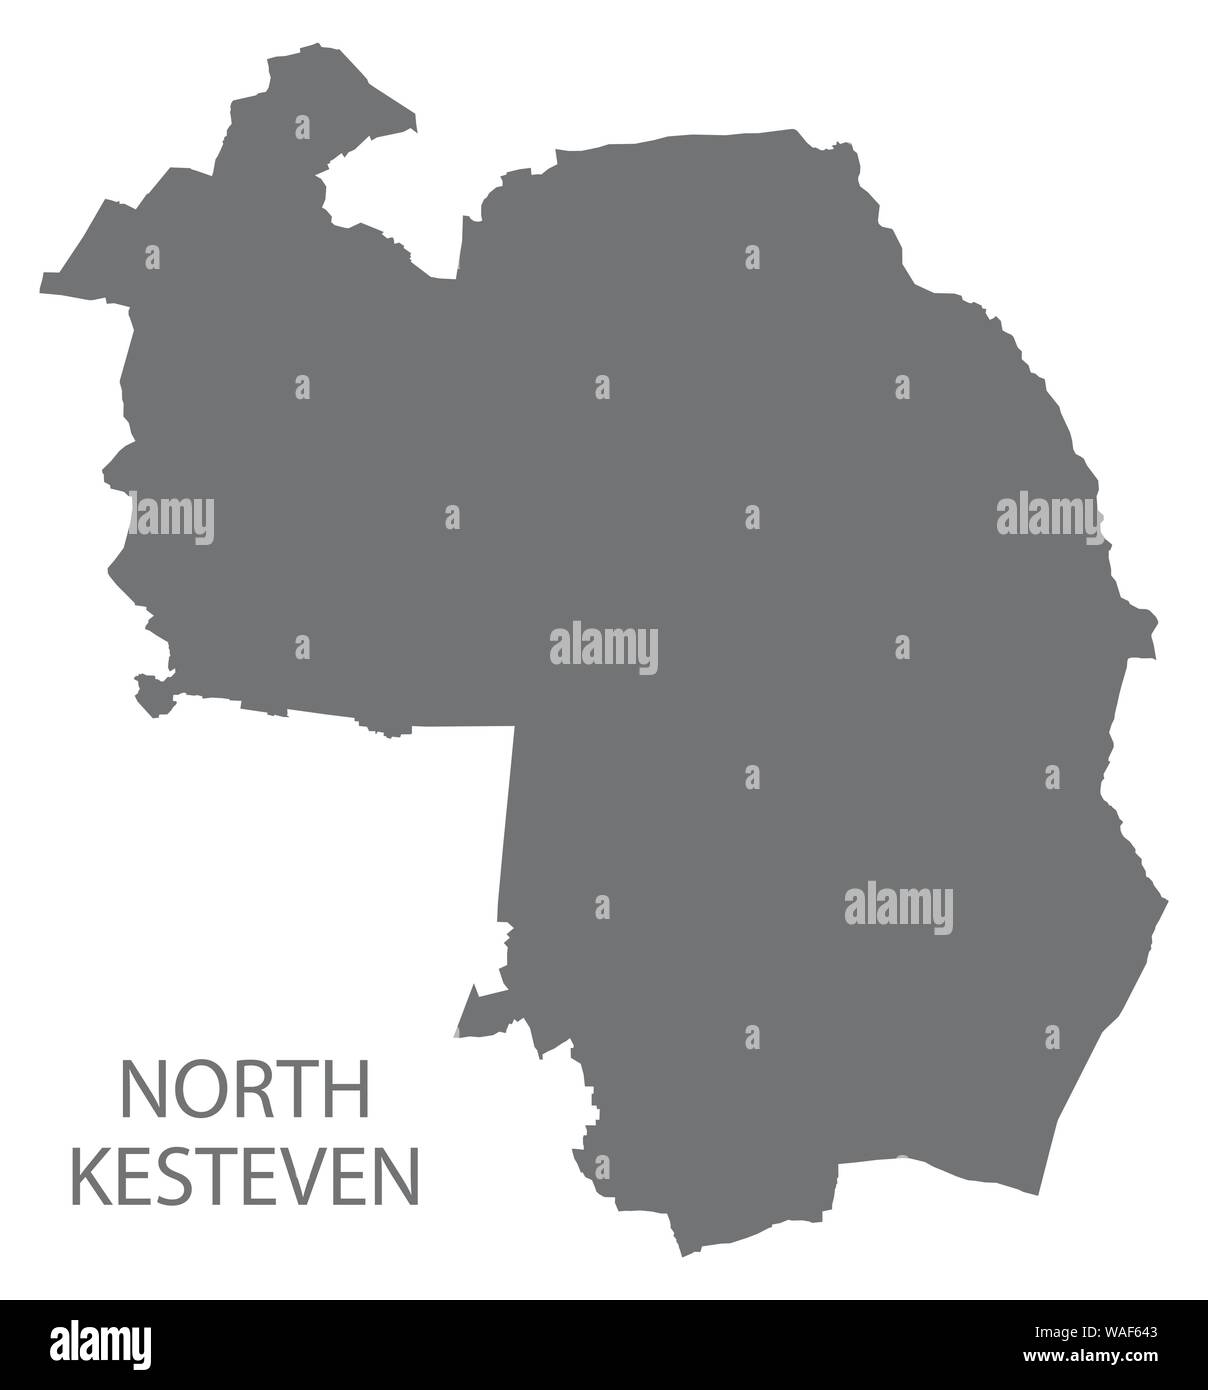 North Kesteven grigio mappa del Distretto di East Midlands England Regno Unito Illustrazione Vettoriale